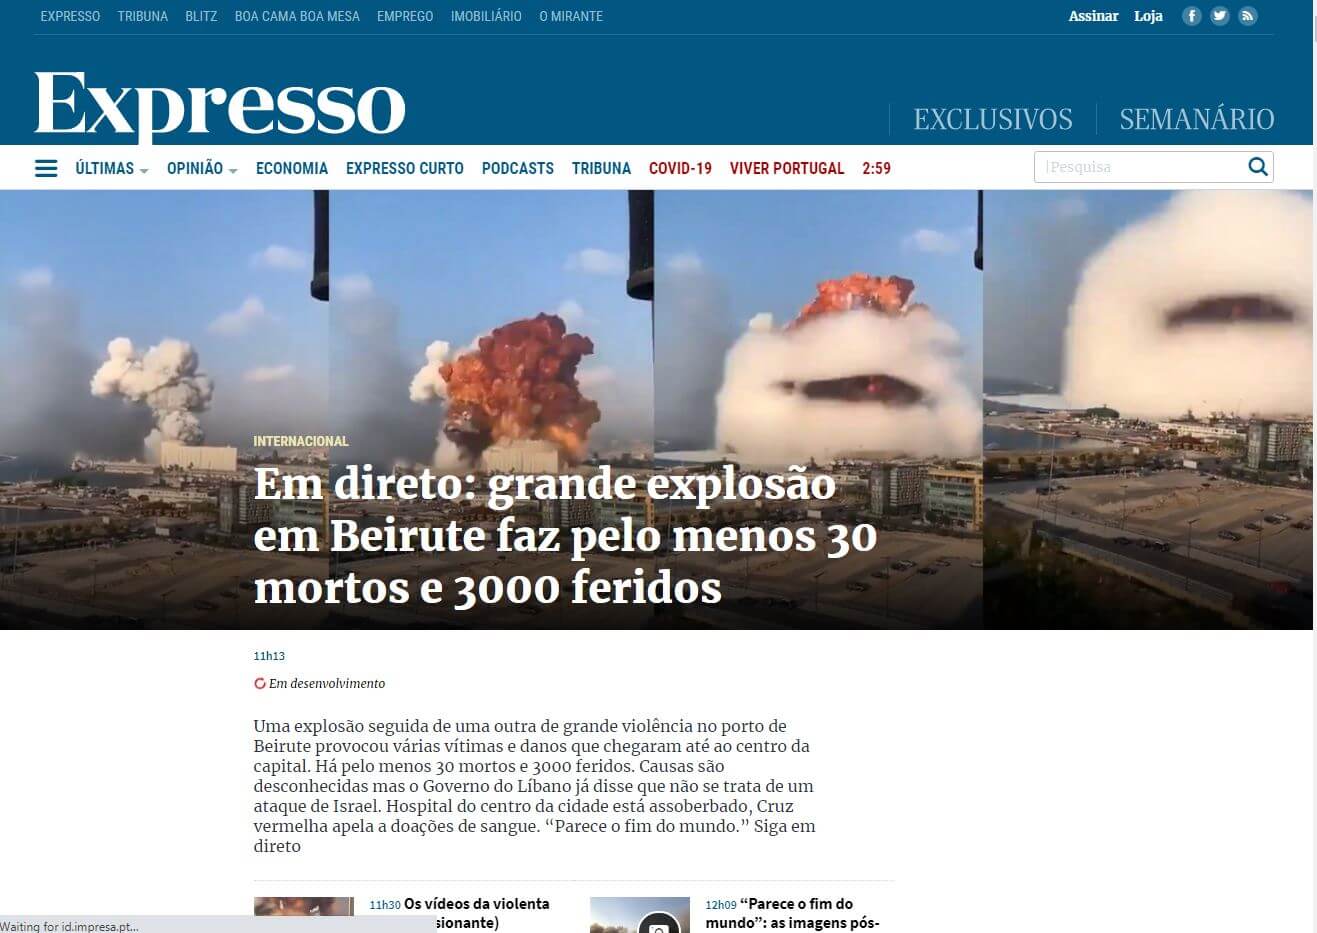 periodicos de portugal 06 expresso website